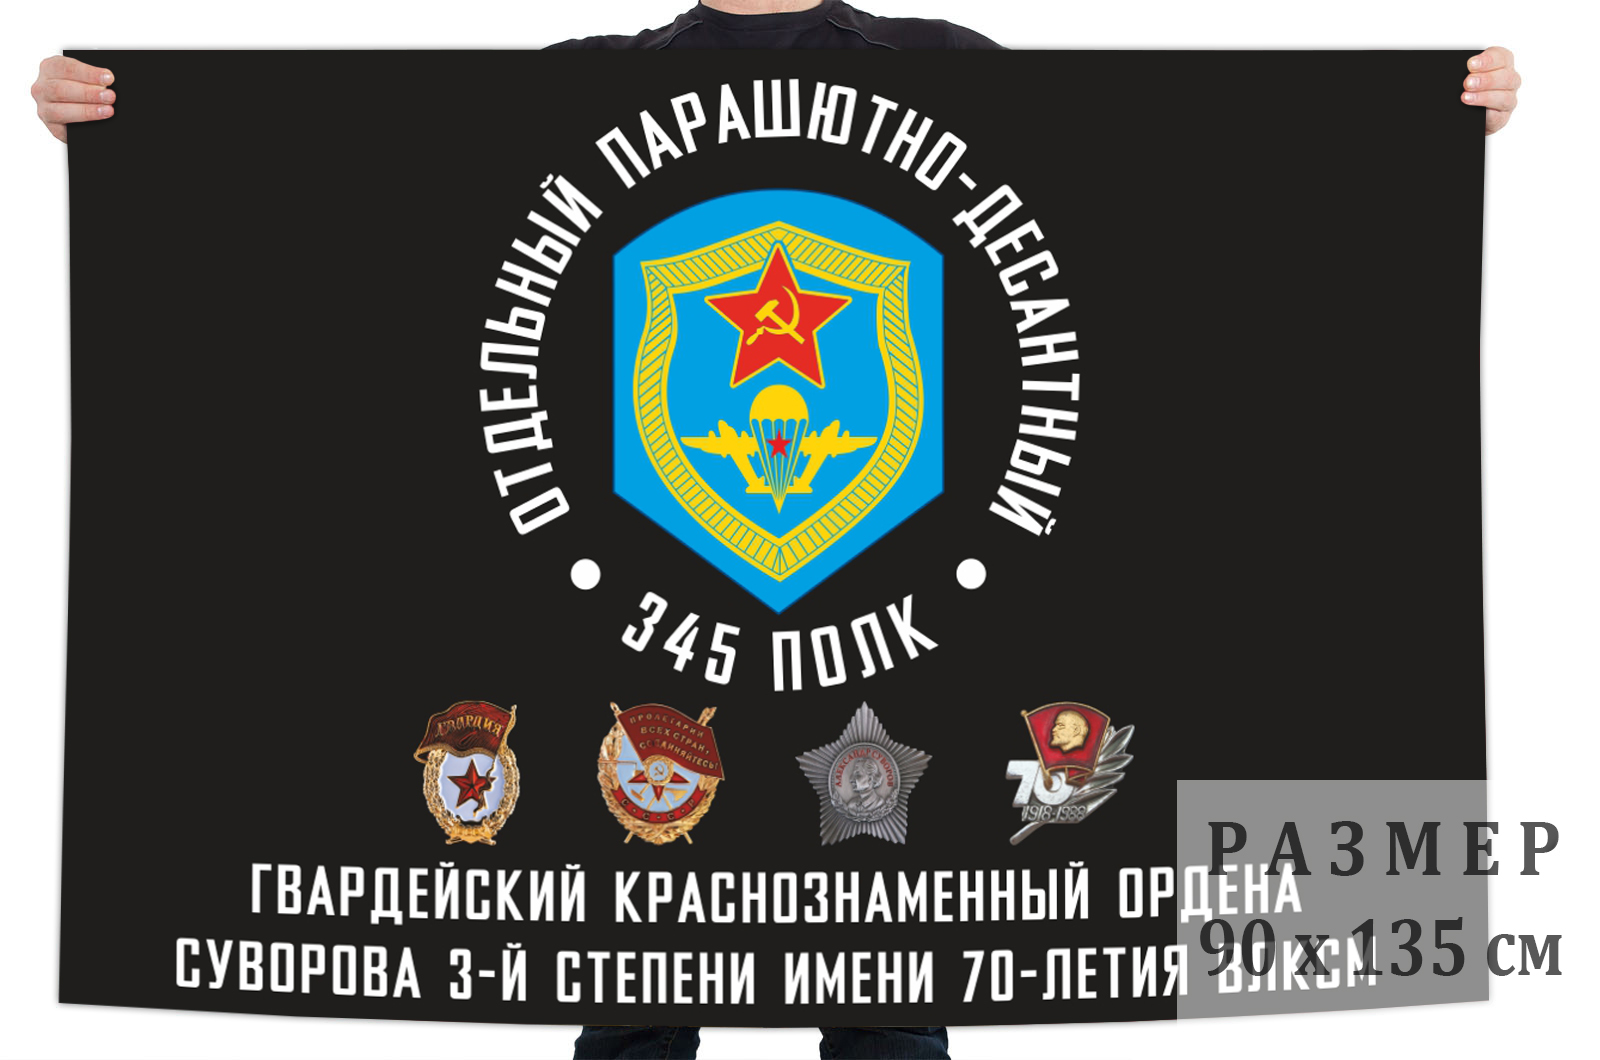 Флаг «345-й гвардейский парашютно-десантный Краснознамённый, ордена Суворова полк имени 70-летия ВЛКСМ»